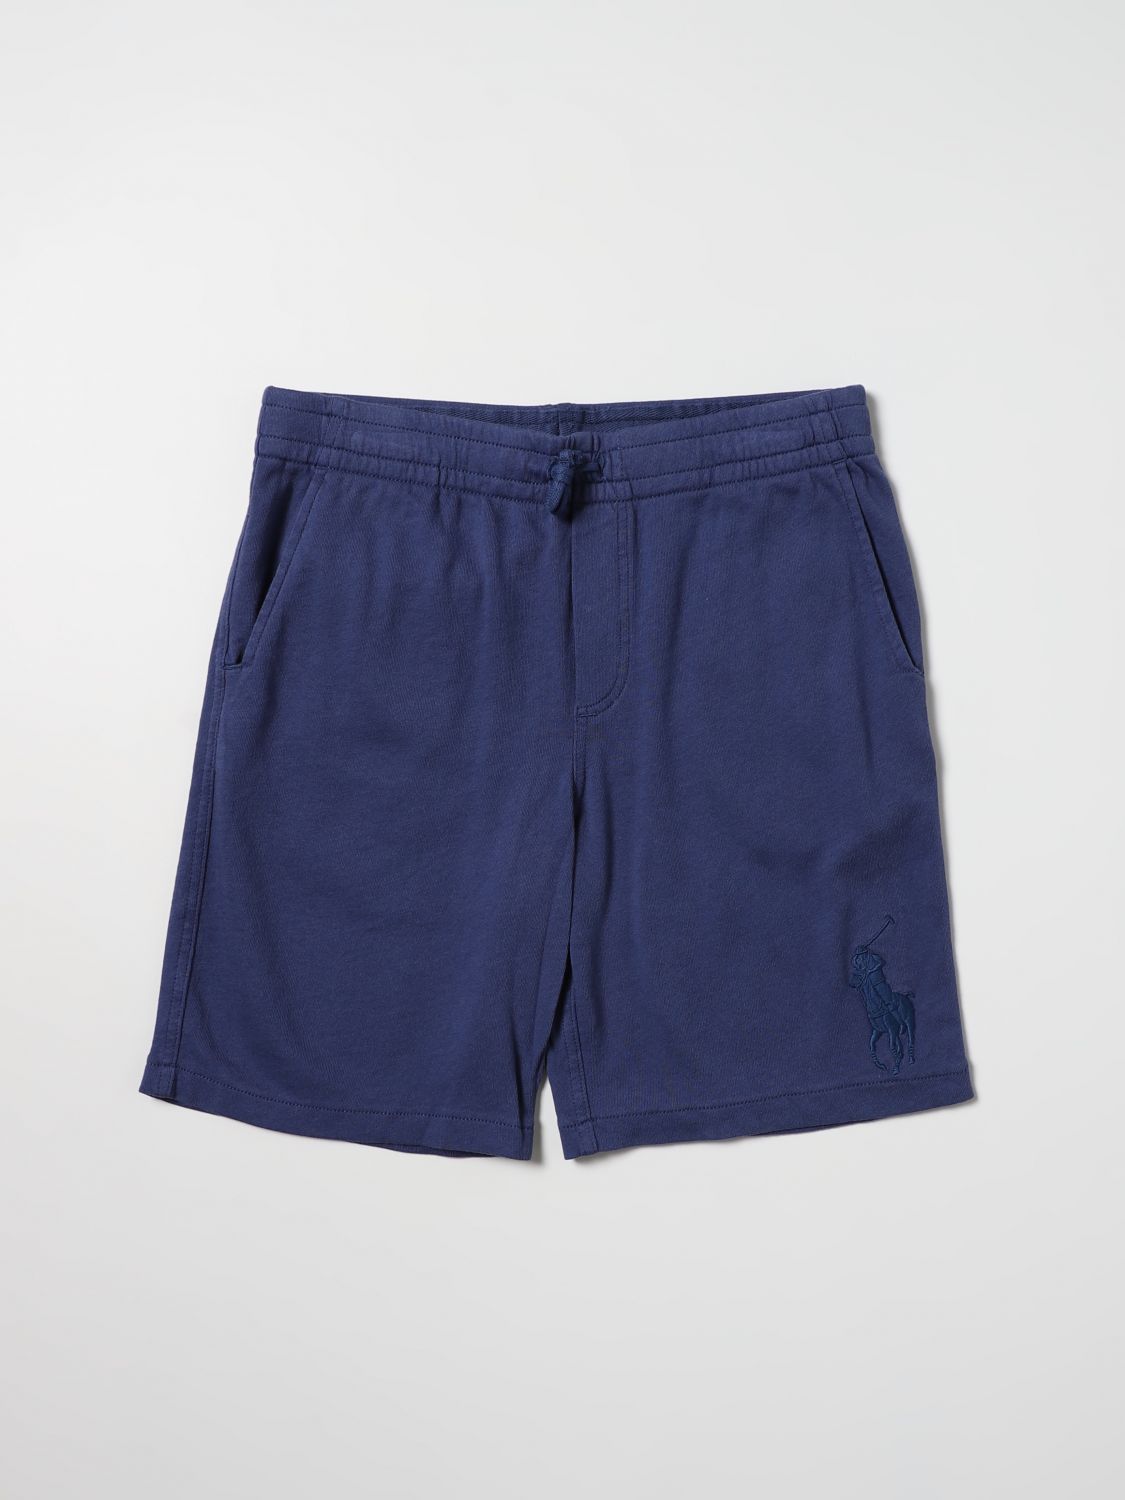 Pantaloncino Polo Ralph Lauren: Pantaloncino Polo Ralph Lauren bambino blue 1